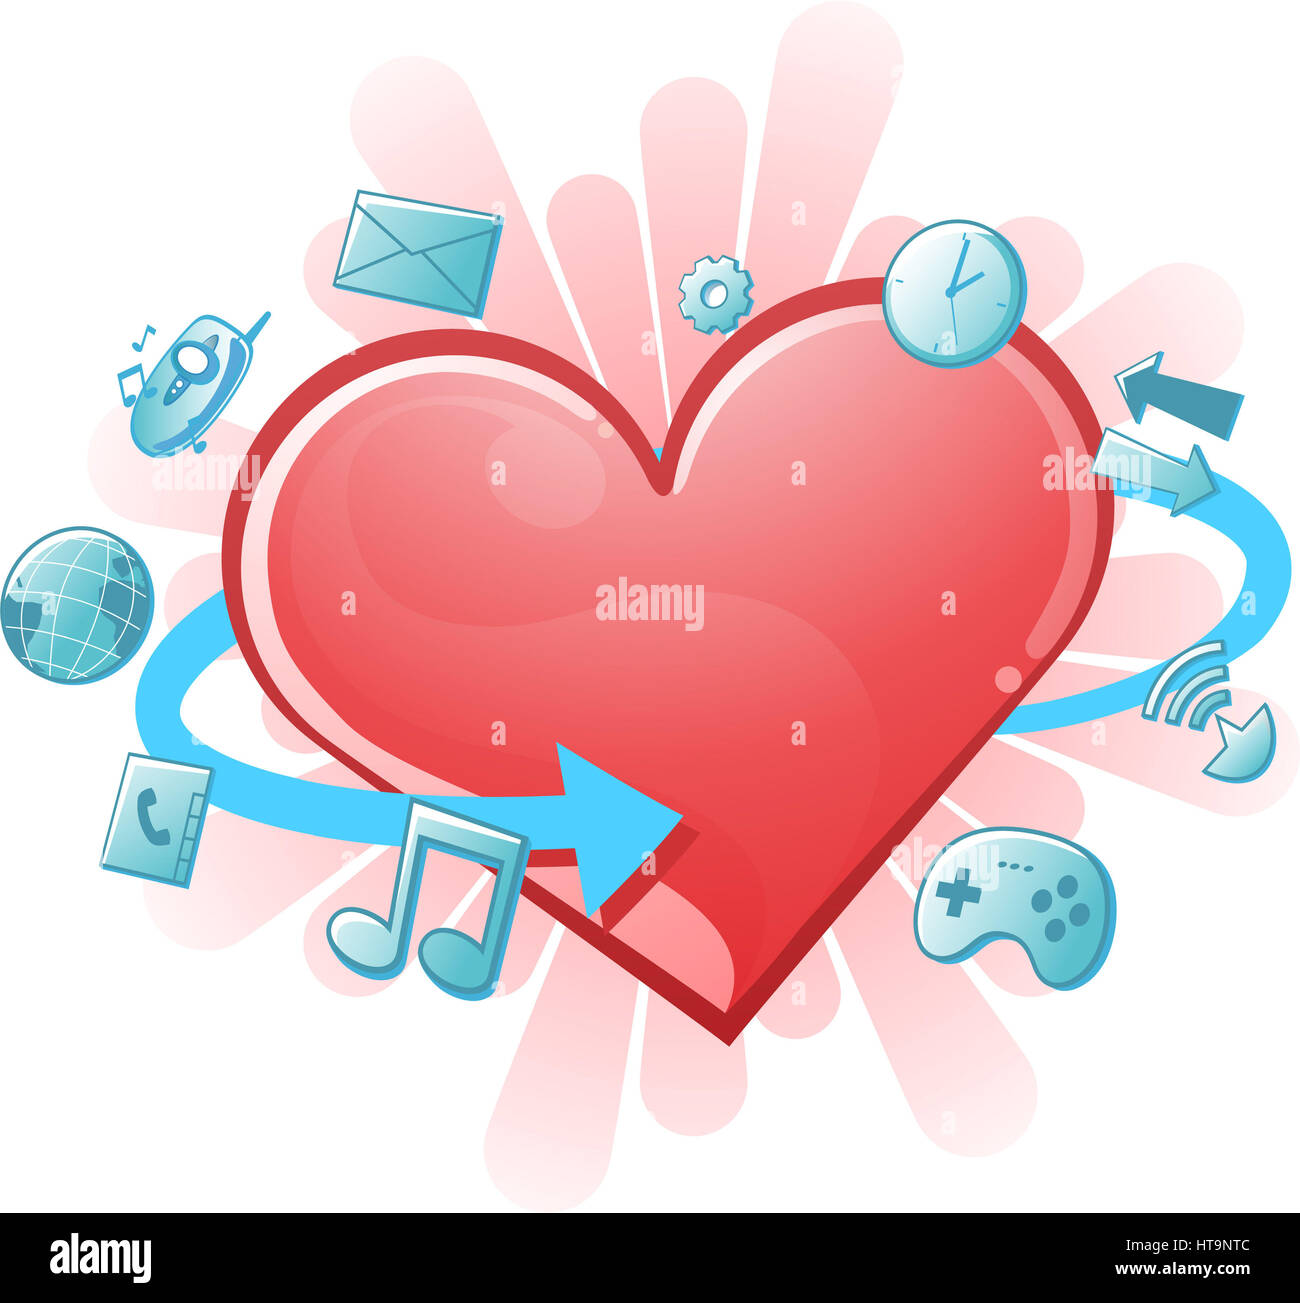 Illustrazione vettoriale di un cuore nella tecnologia era. Foto Stock